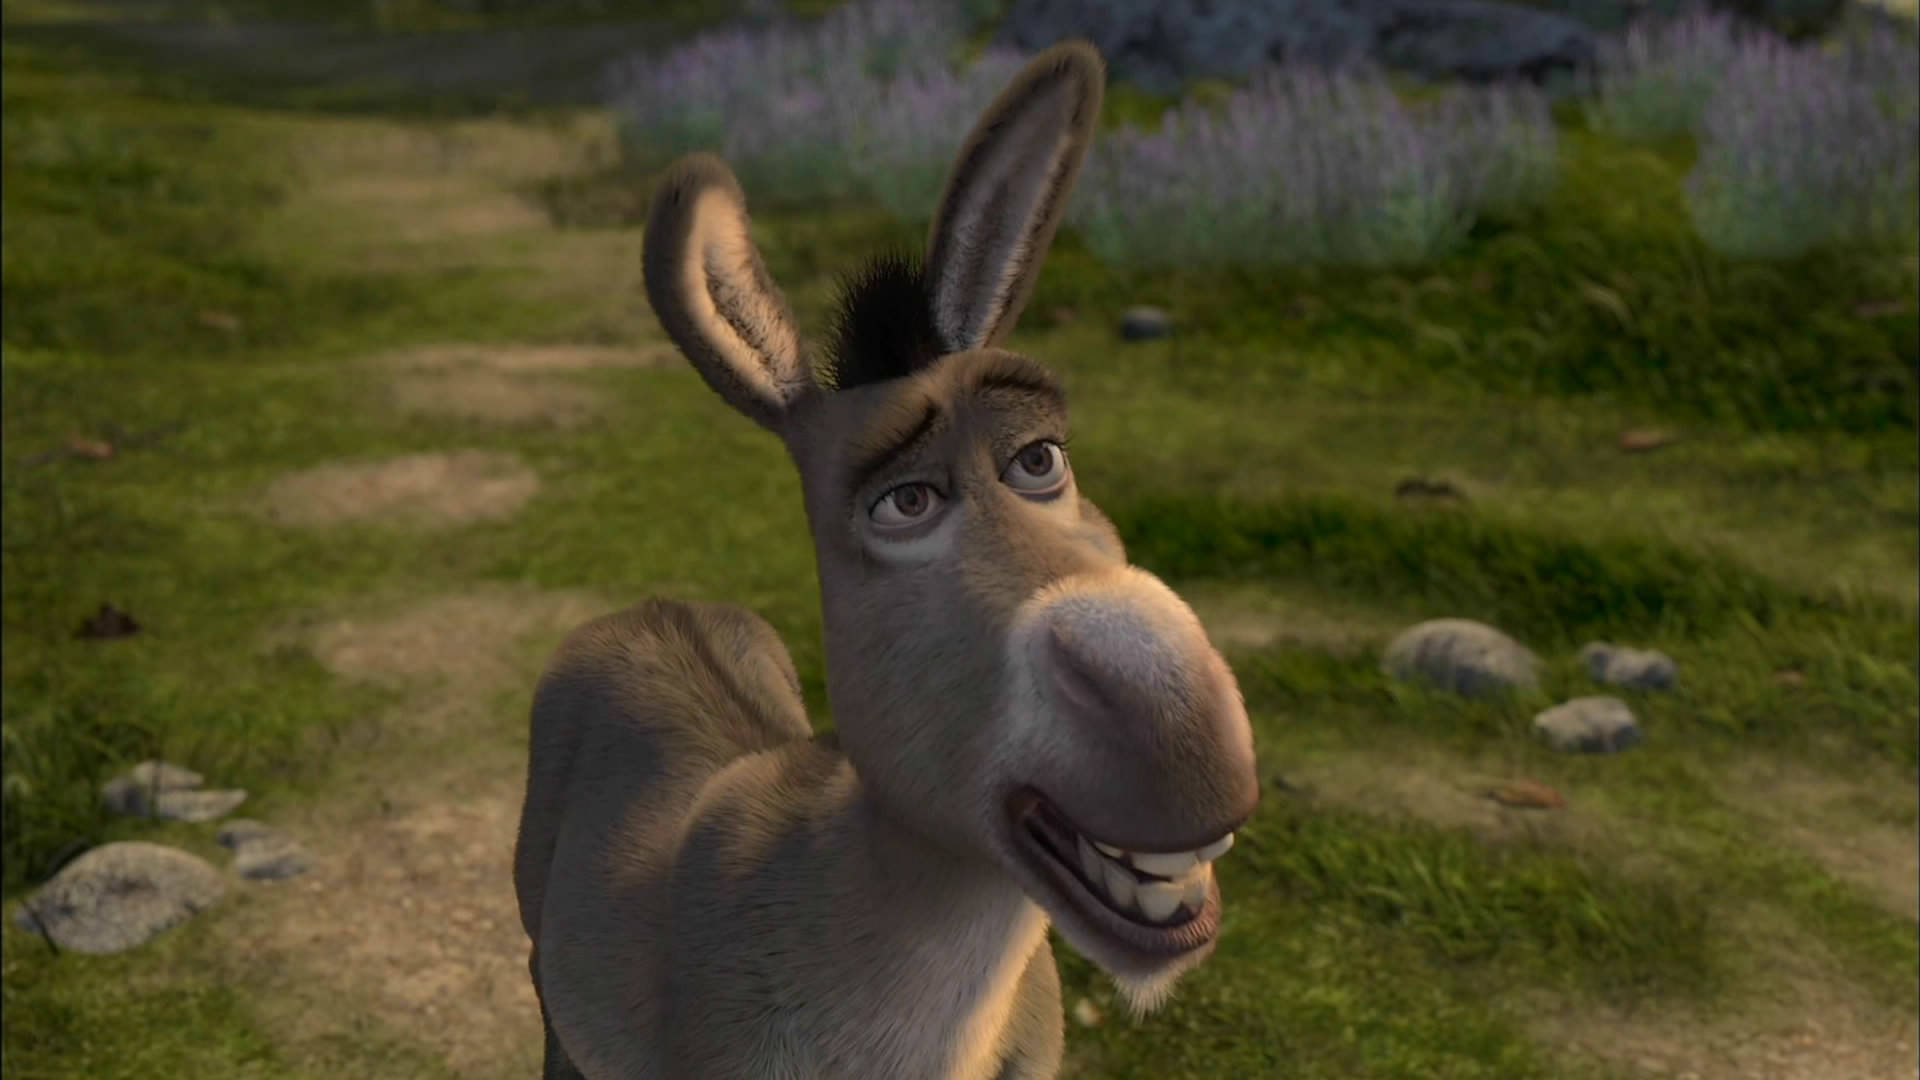 The Talking Donkey Background